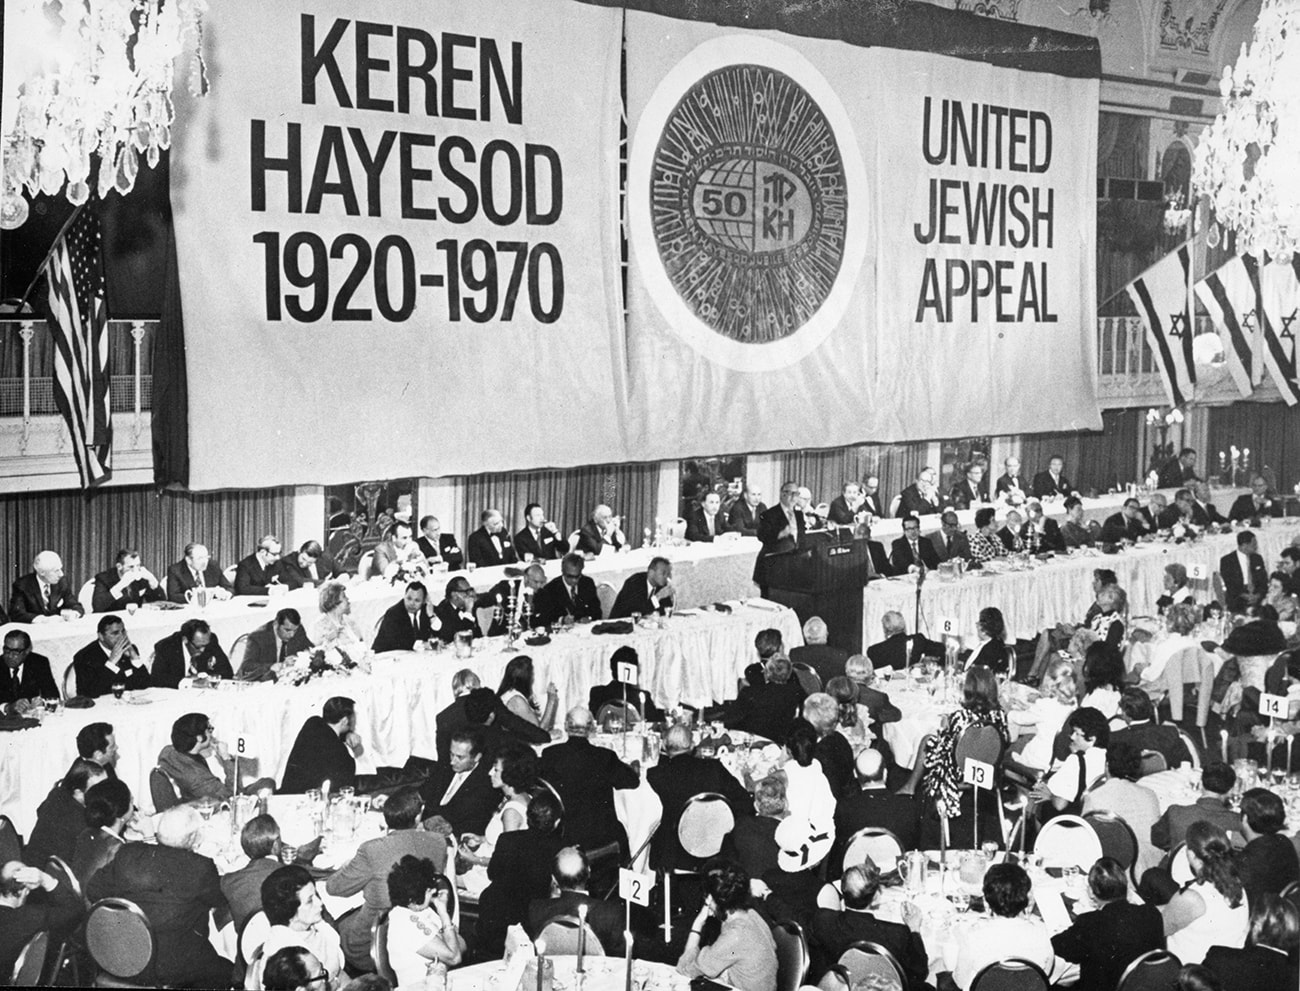 Le président de l'Appel juif unifié aux États-Unis, A. Zinberg, lors d'un discours à l’occasion du jubilé du Keren Hayessod à New York, juillet 1970